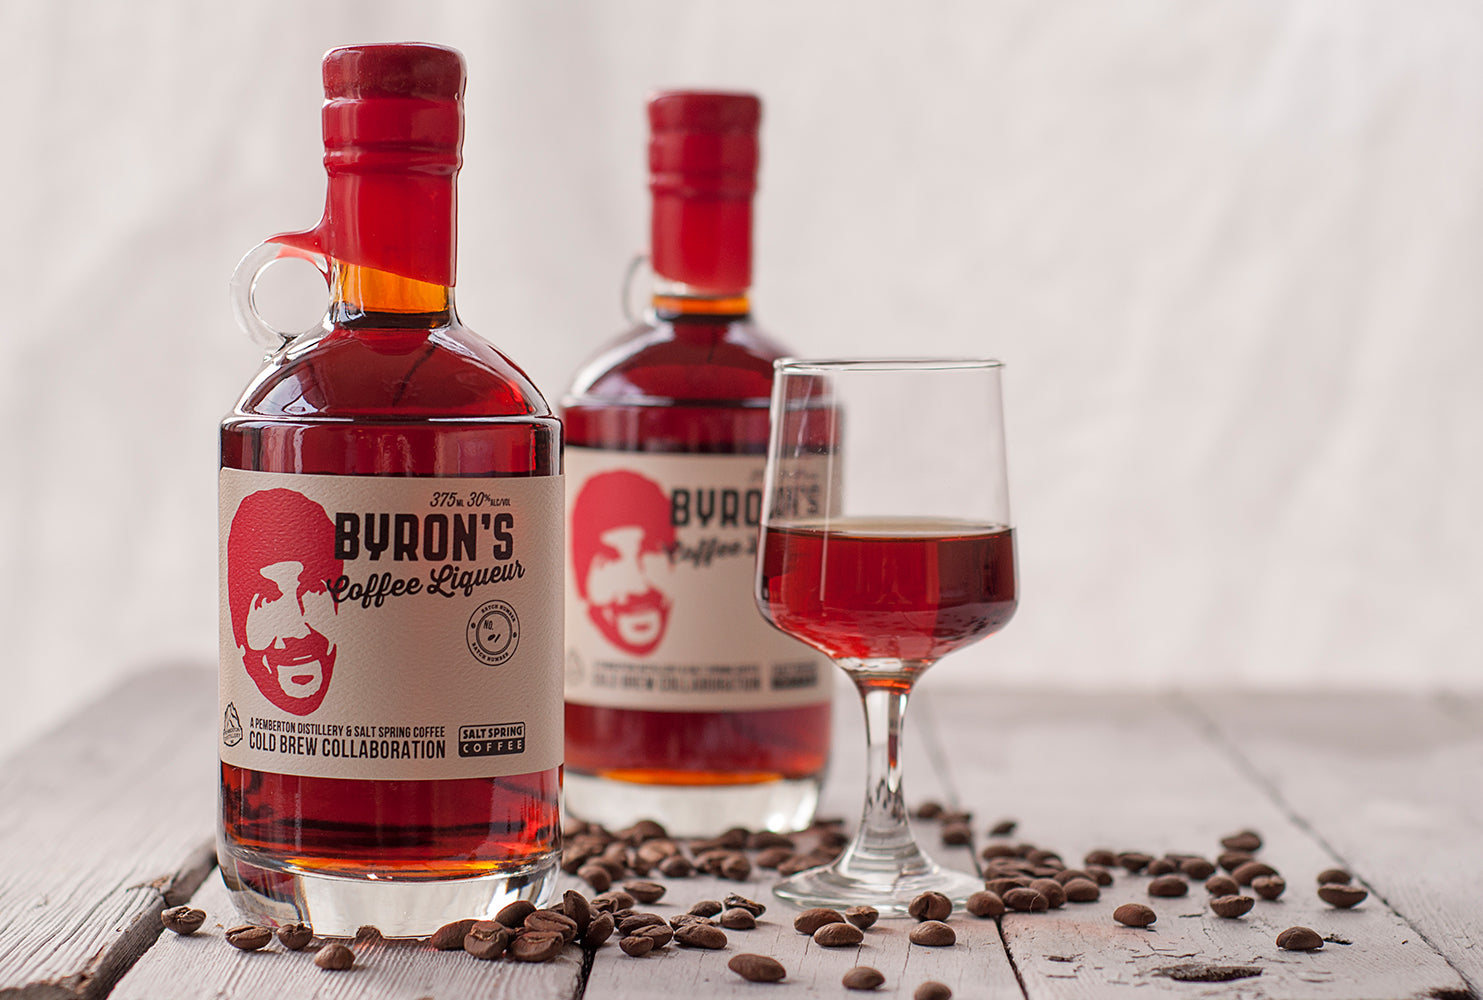 Meet Byron's Organic Coffee Liqueur